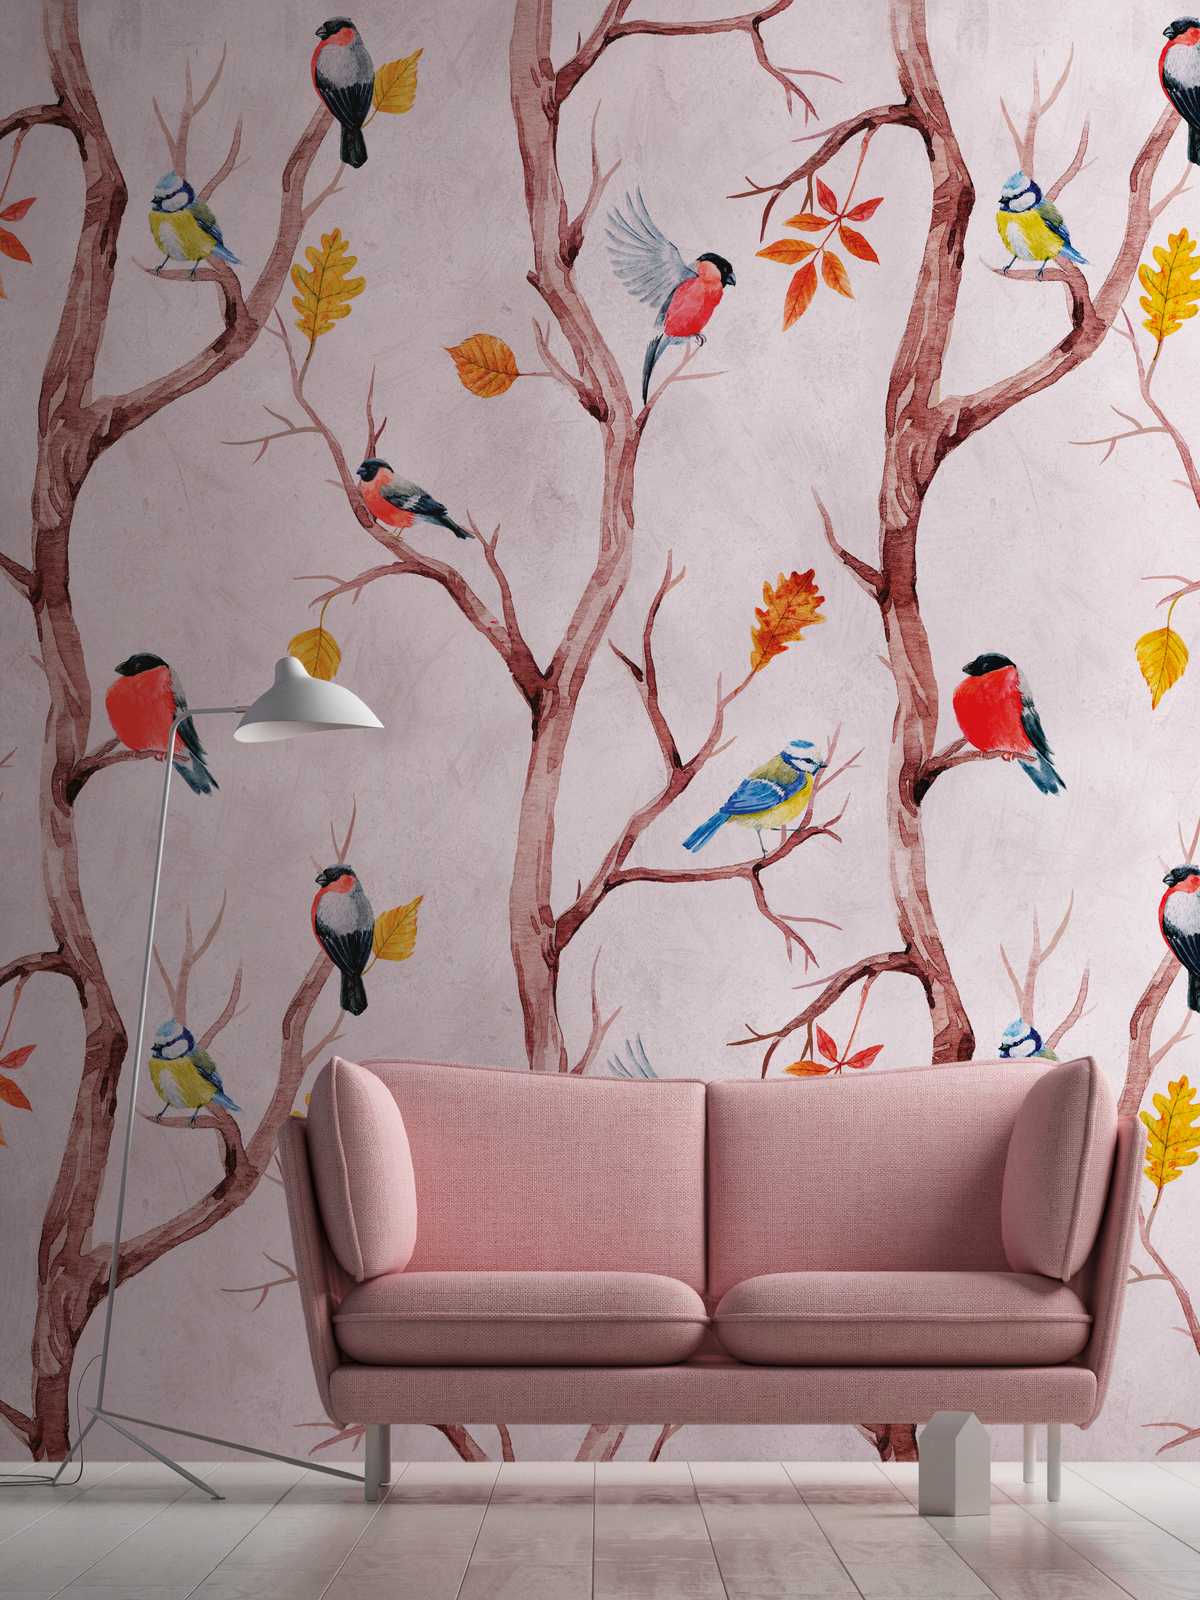             Nouveauté papier peint - papier peint à motifs d'oiseaux dans le style aquarelle
        